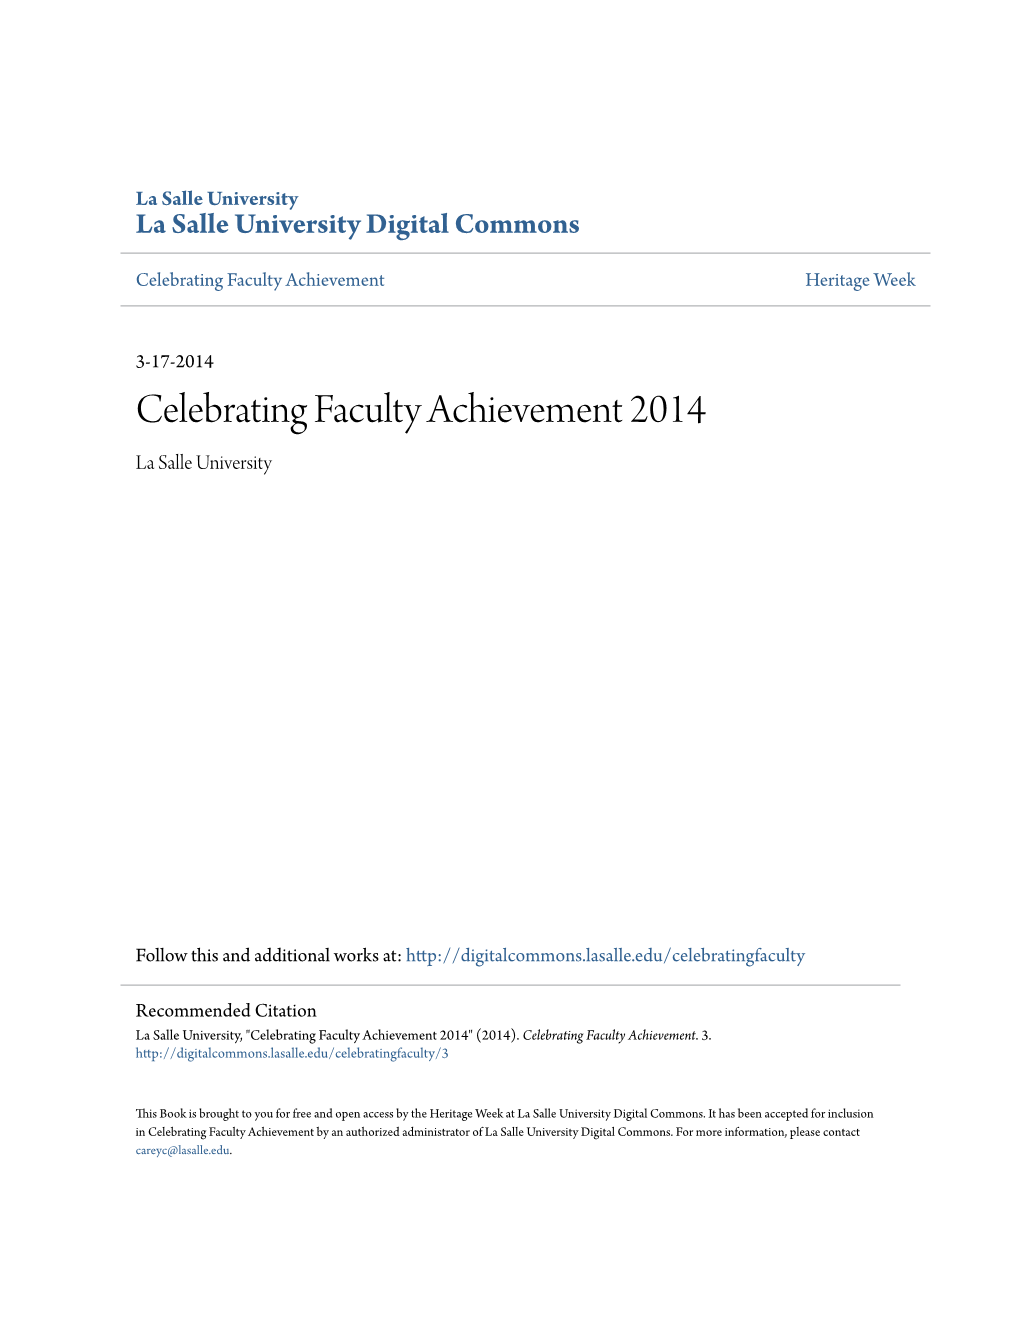 Celebrating Faculty Achievement 2014 La Salle University